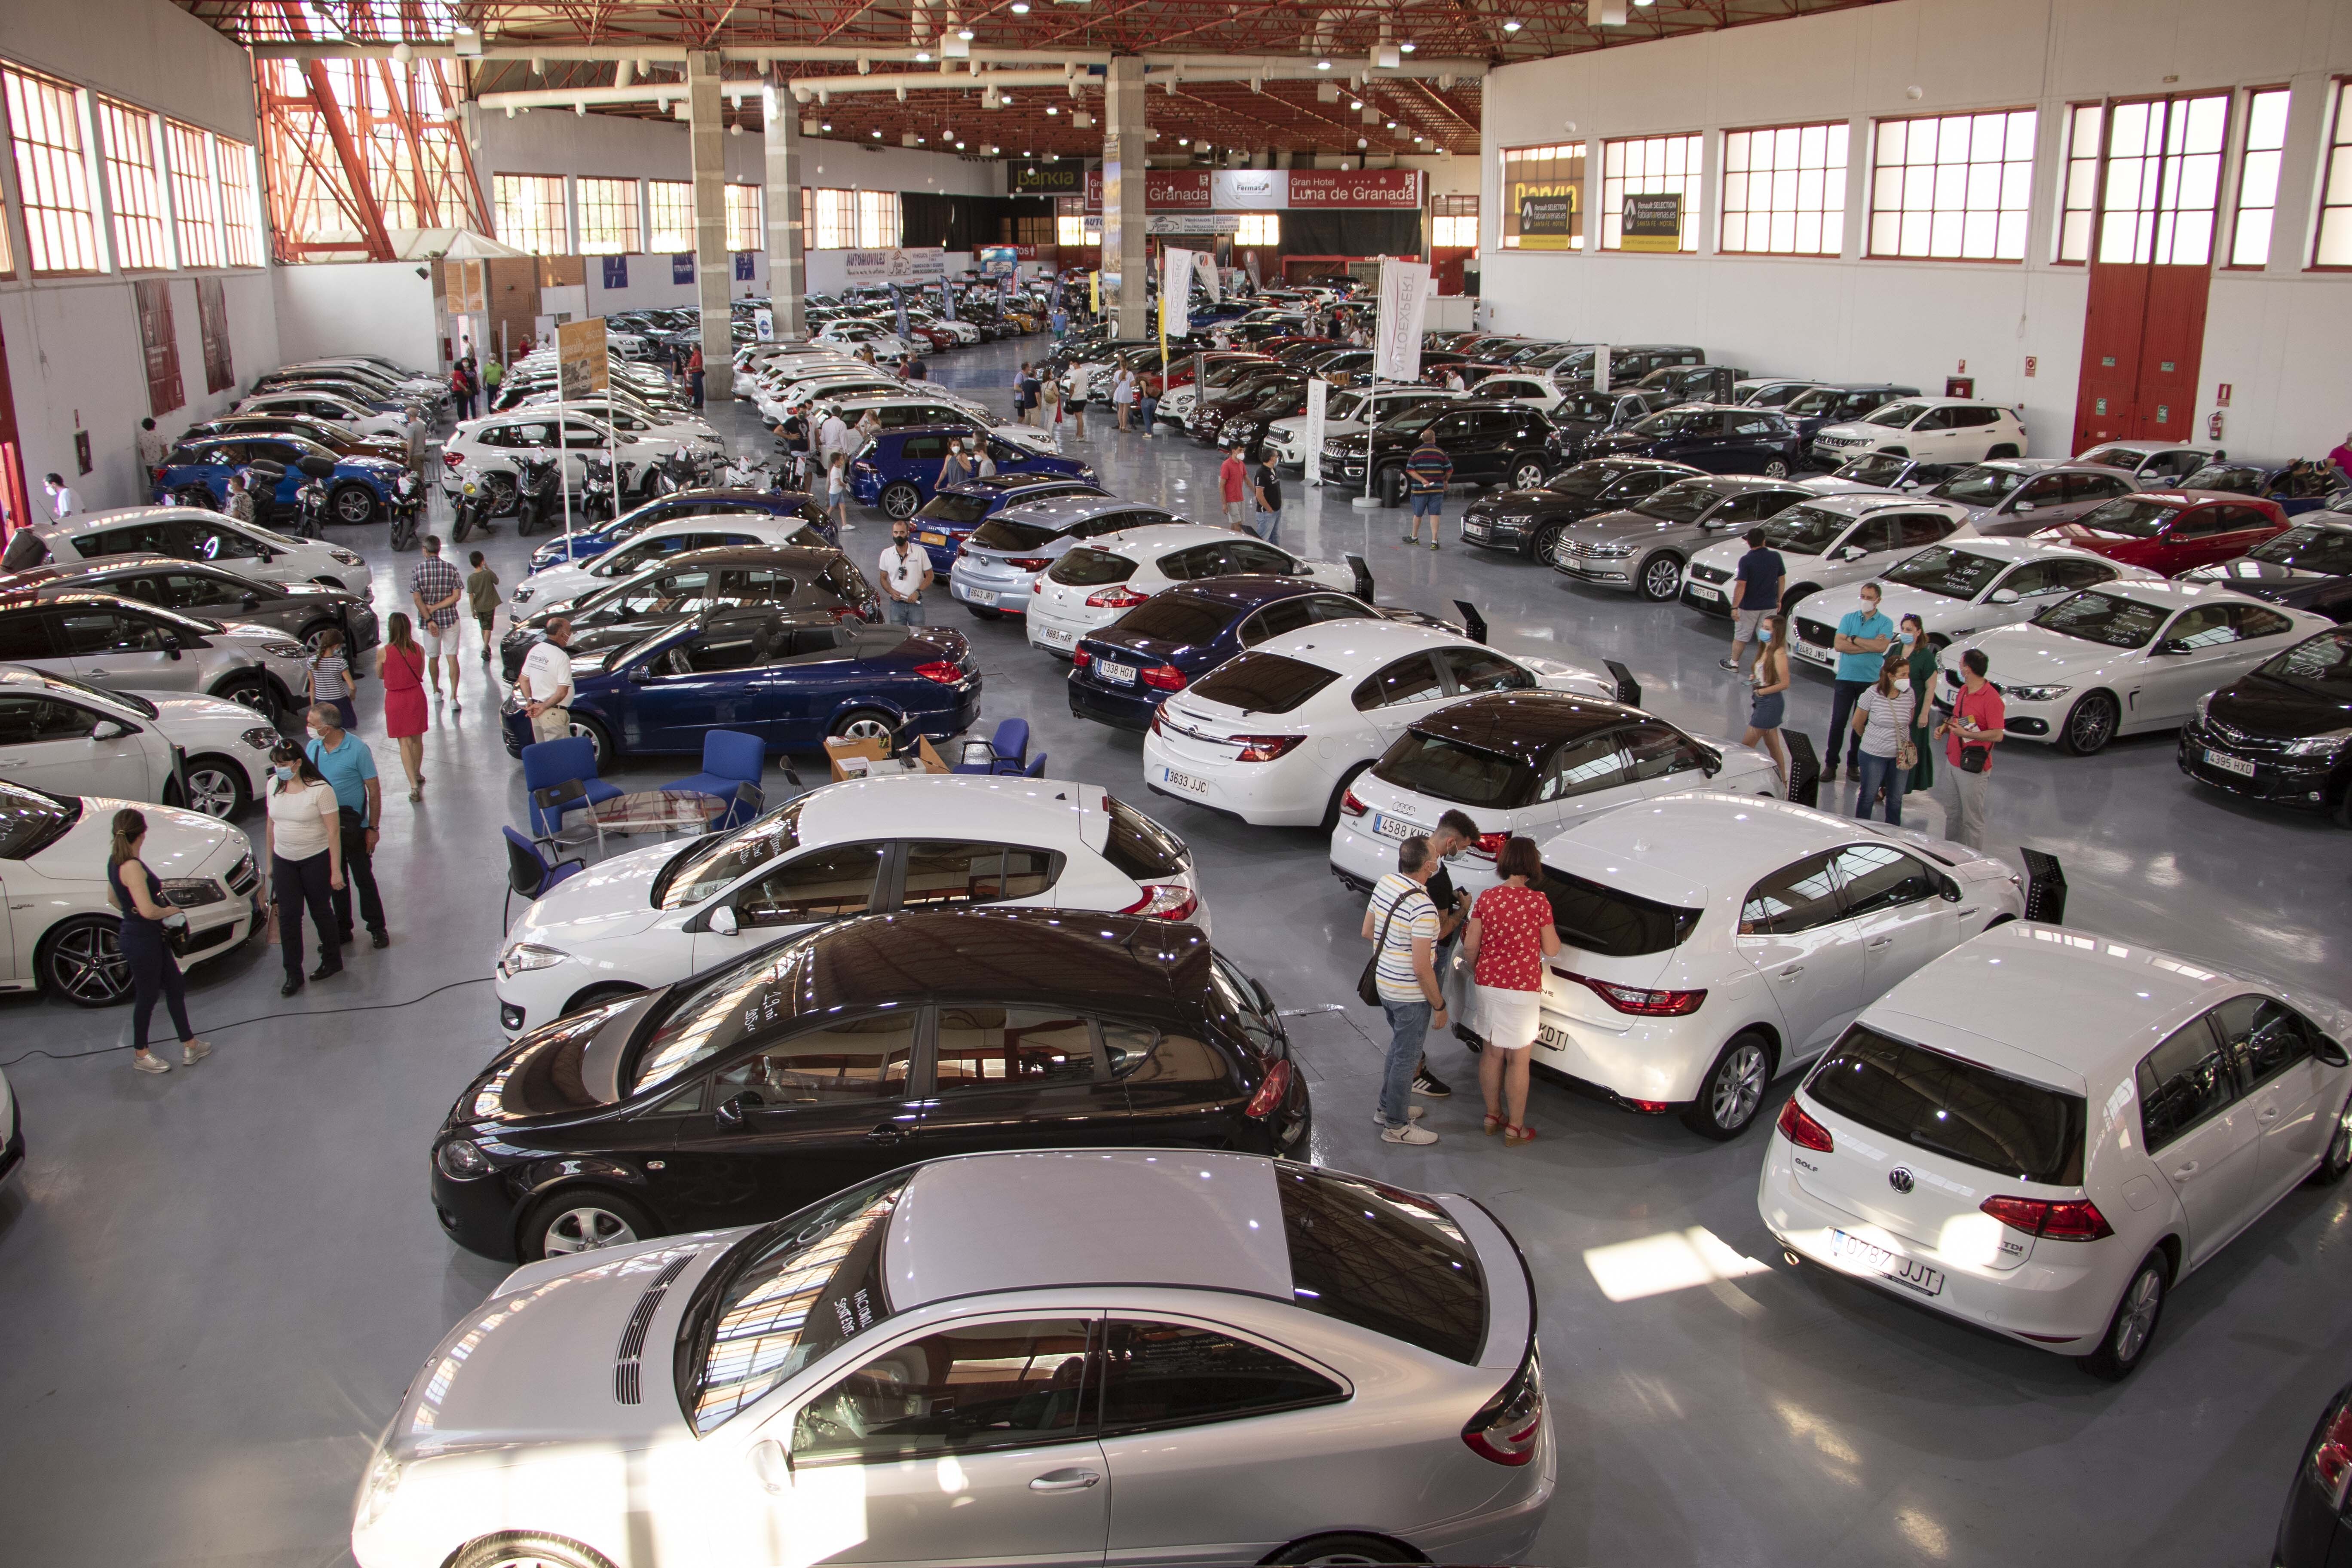 Más de 1.200 vehículos de ocasión se ponen a la venta en Fermasa este fin de semana